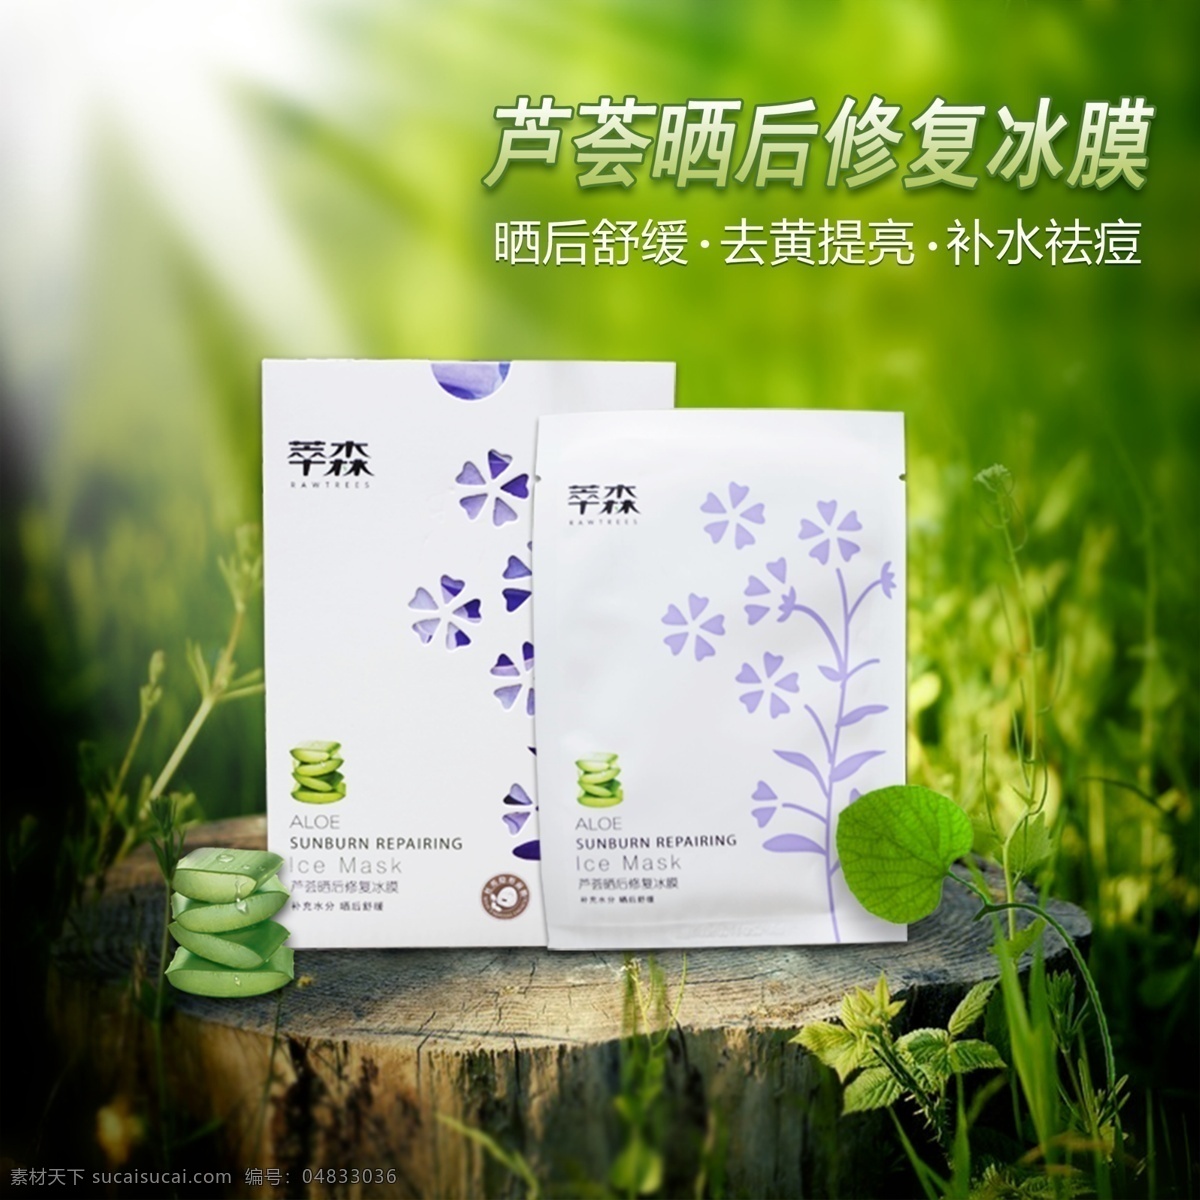 芦荟 面膜 产品 海报 绿色阳光 植物 森林 白色